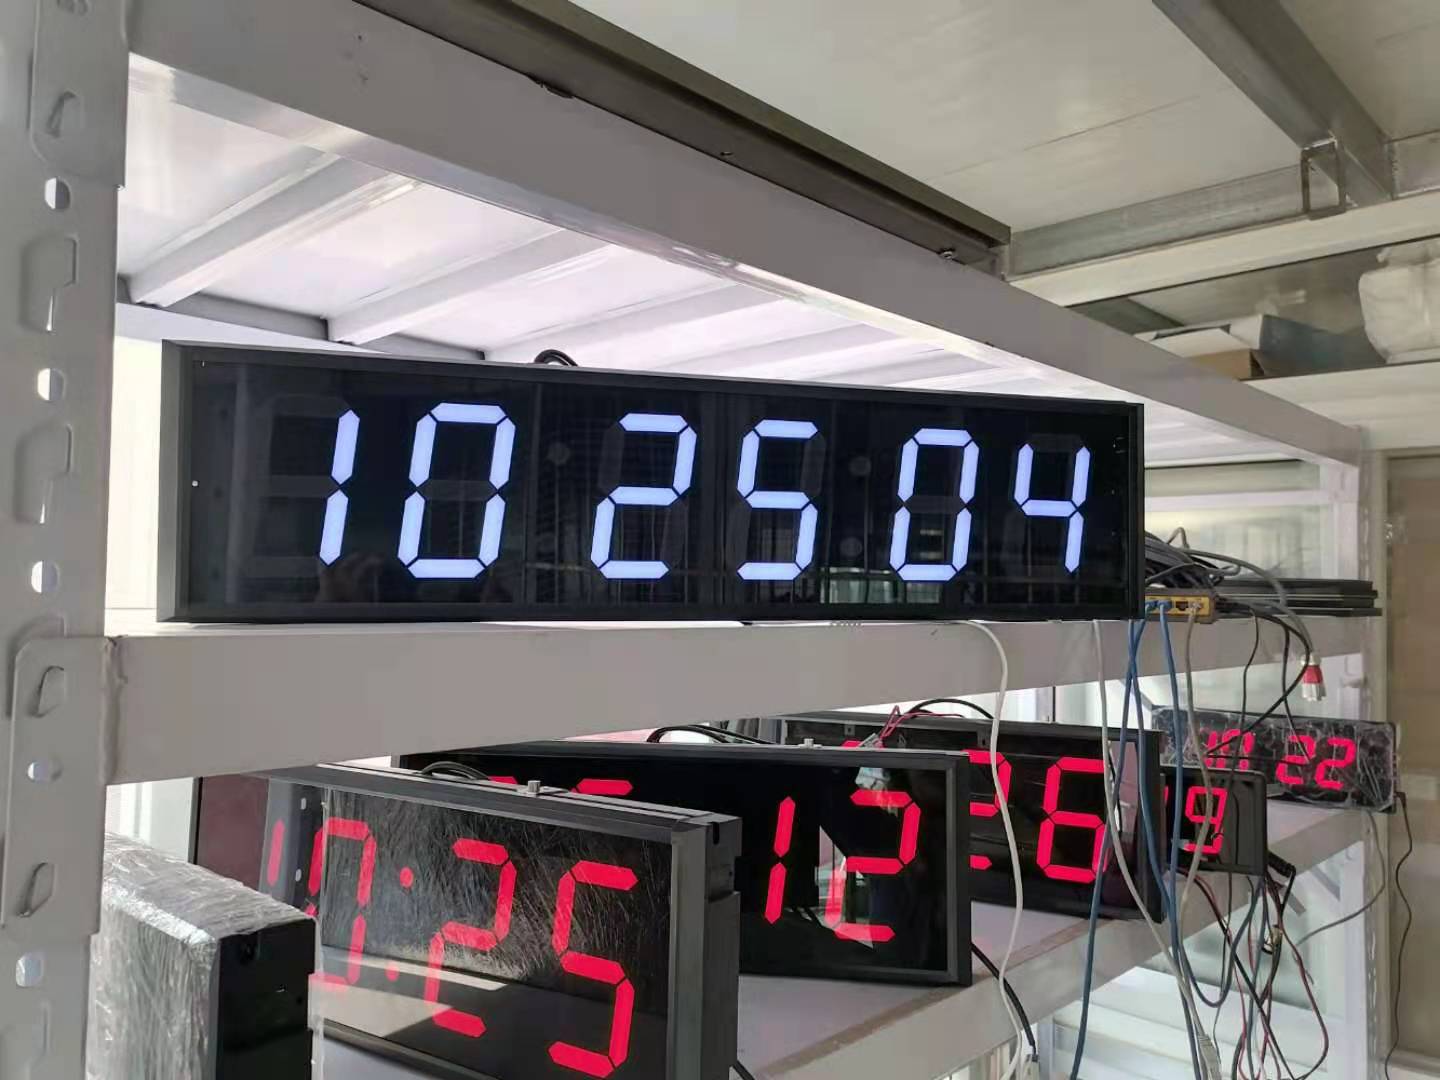 时钟同步系统射频通信时钟系统 GPSLED电子钟显示屏